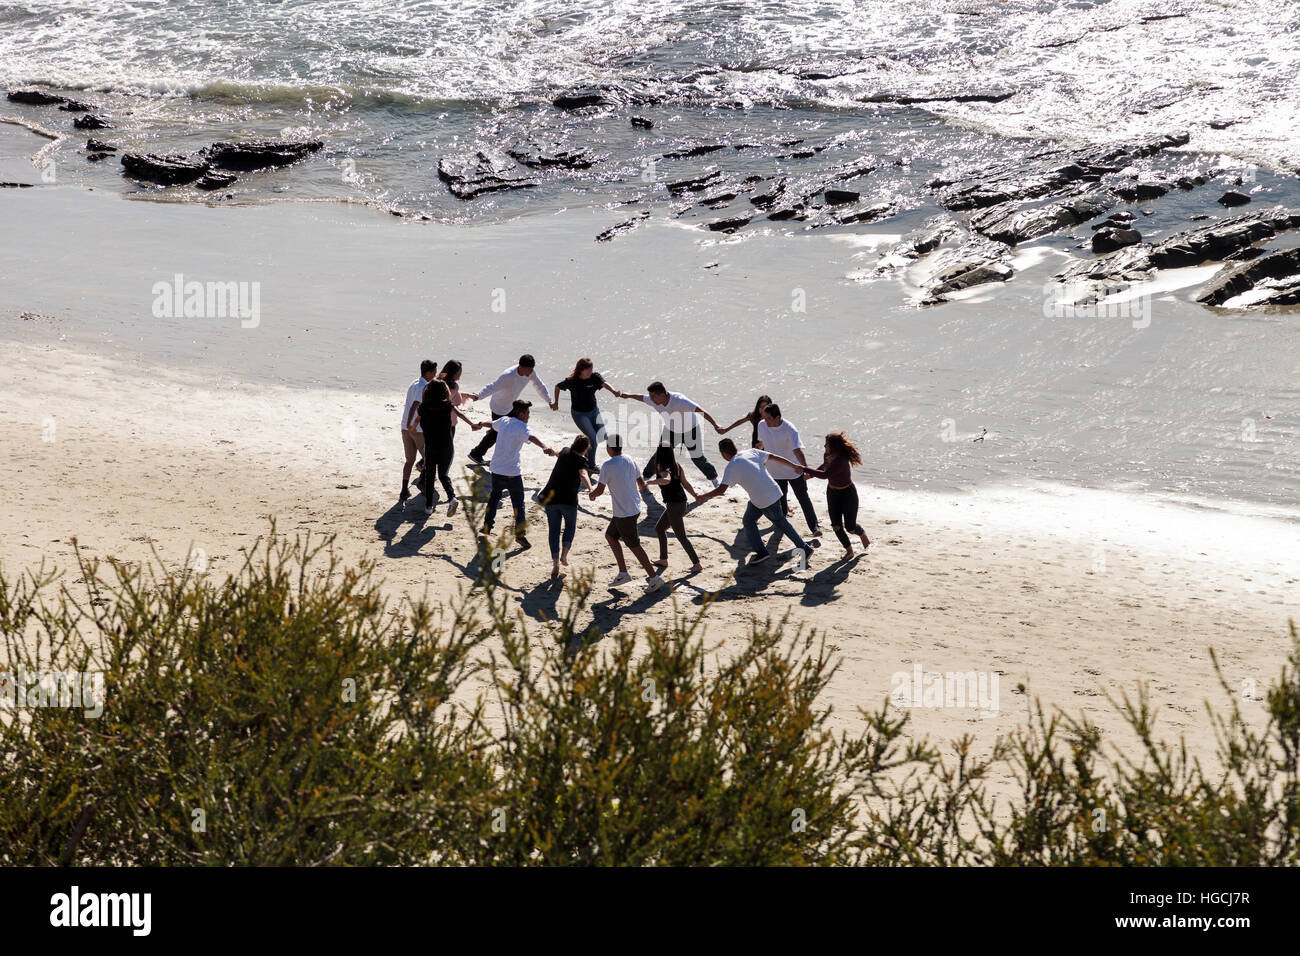 Gesichtslosen Menschen Hand in Hand und läuft in einem Kreis am Strand Spaß haben. Stockfoto